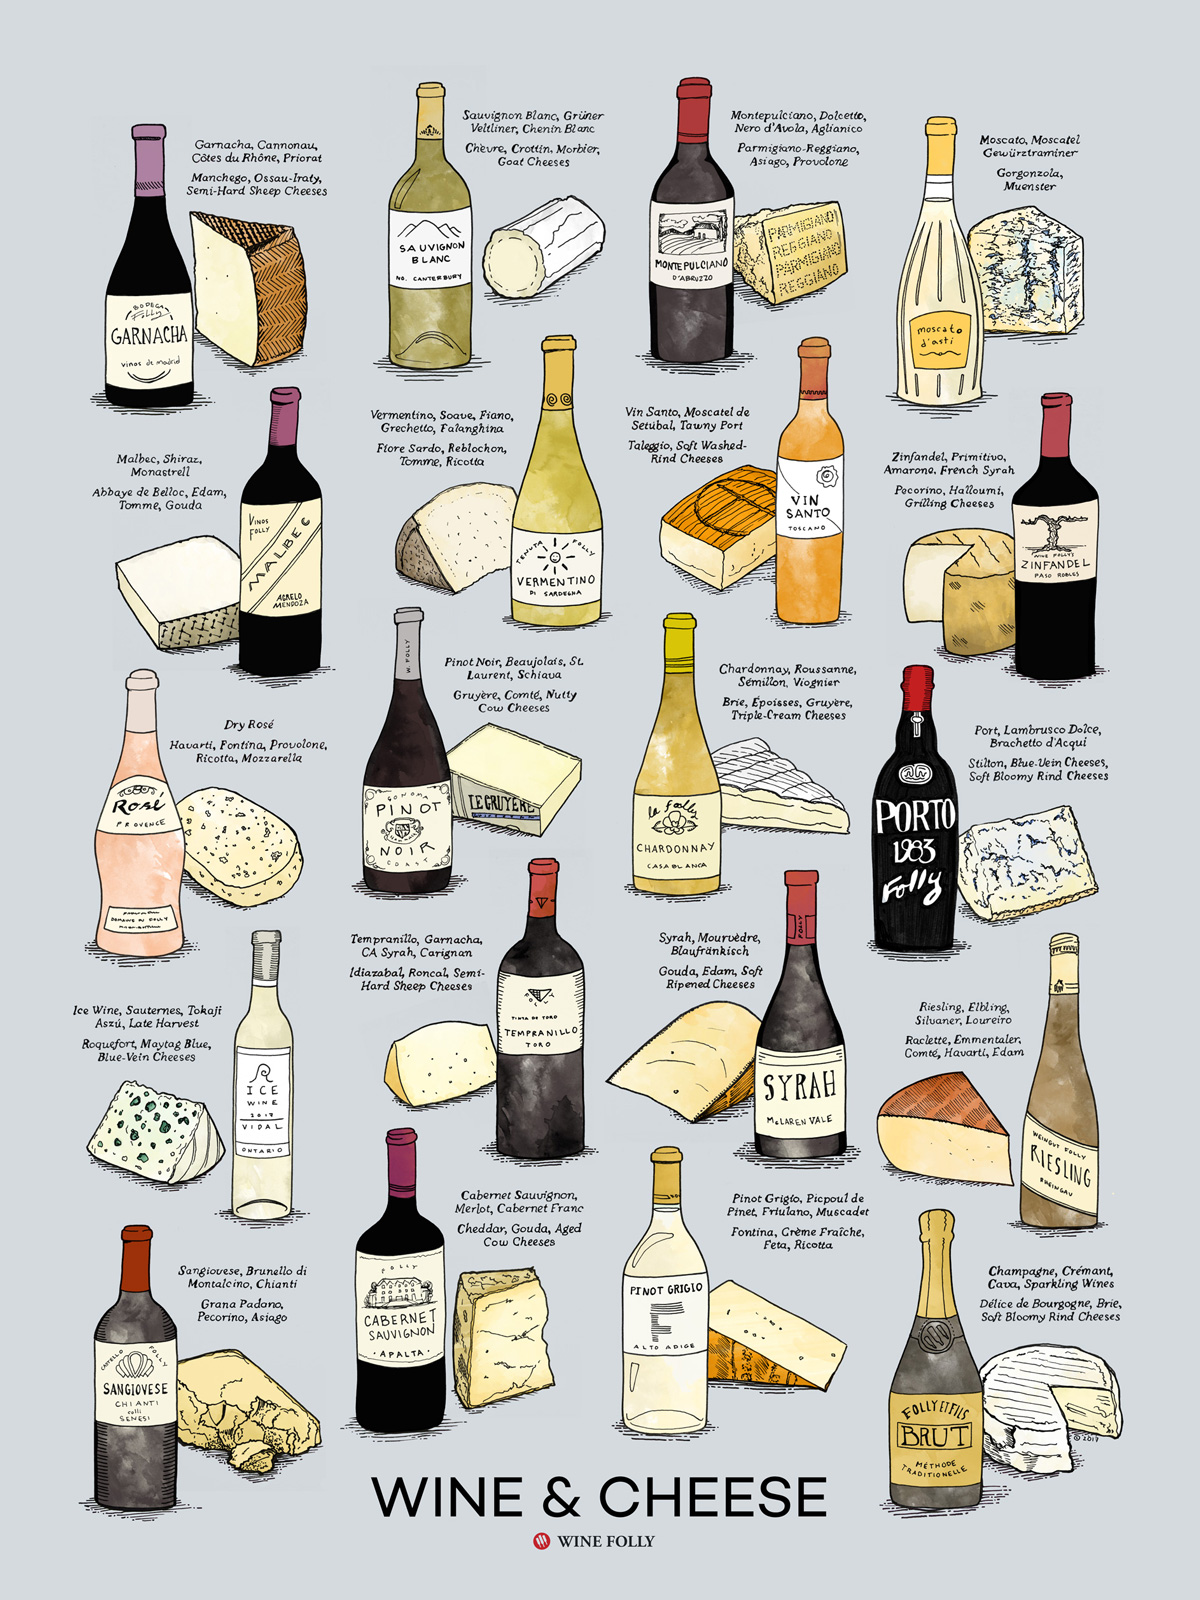 Wine and cheese photo